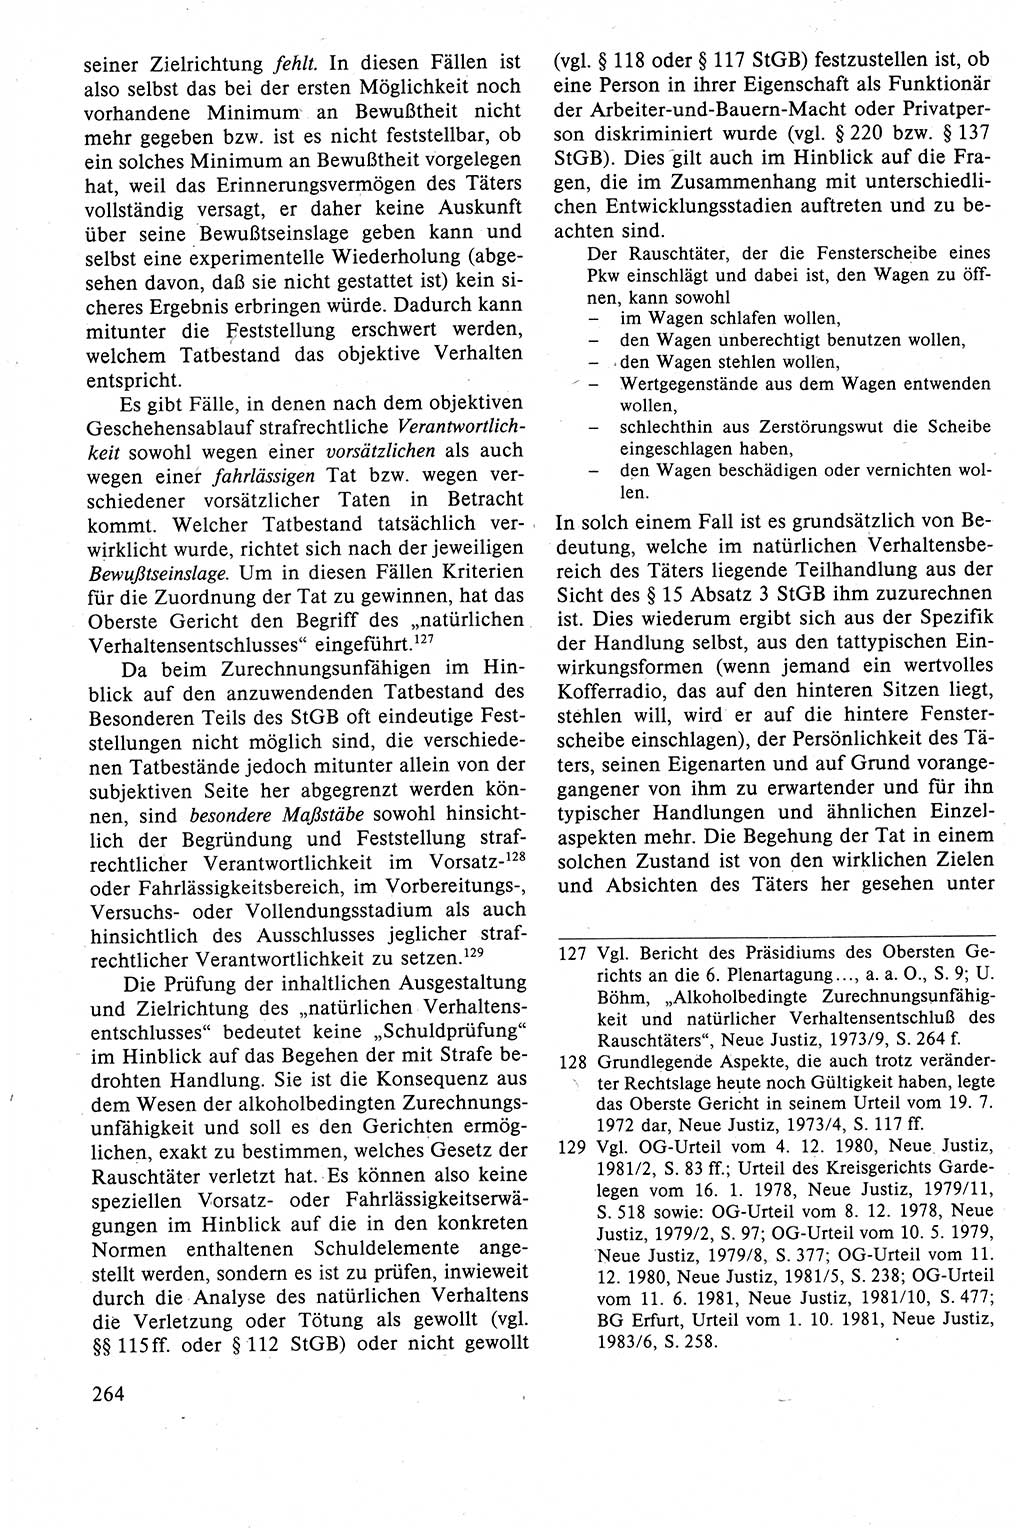 Strafrecht der DDR (Deutsche Demokratische Republik), Lehrbuch 1988, Seite 264 (Strafr. DDR Lb. 1988, S. 264)